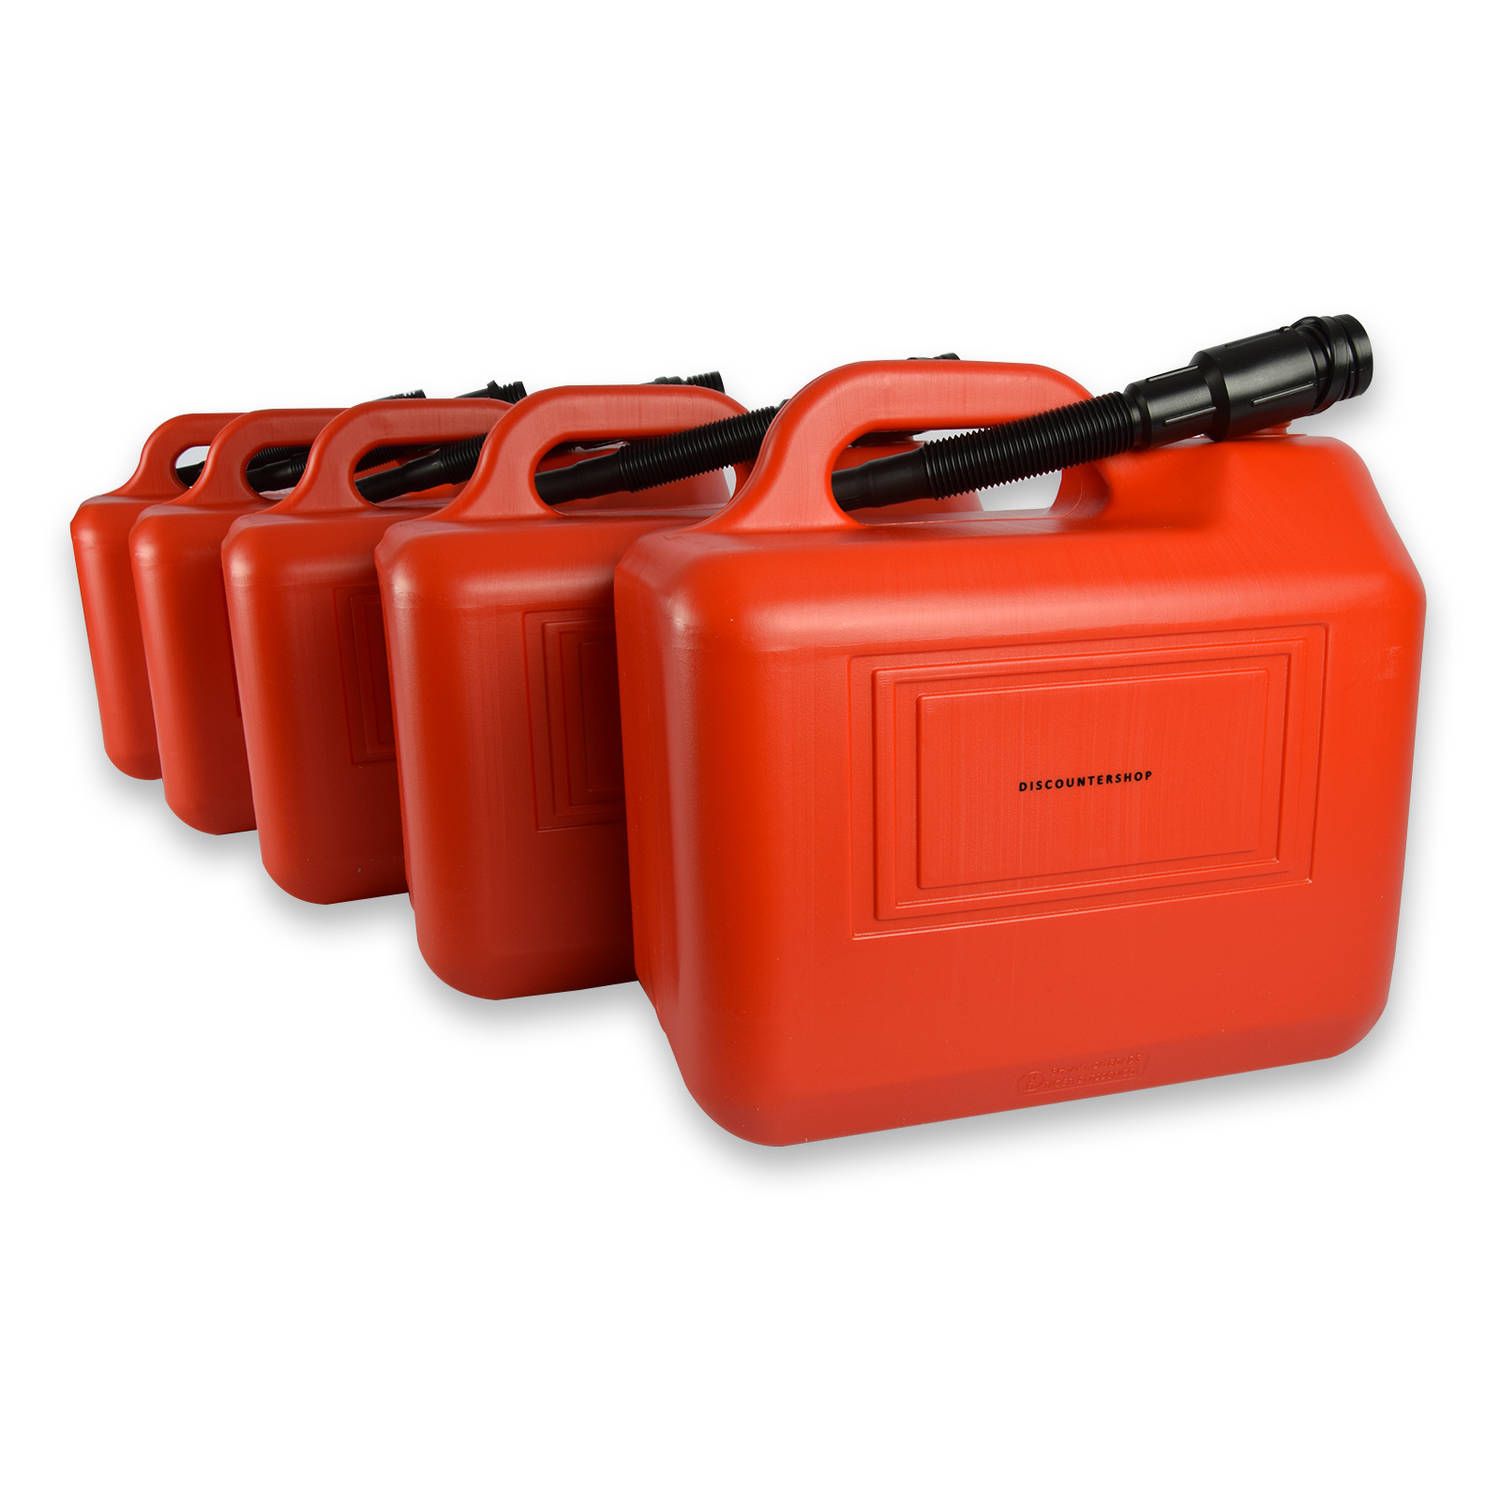 5-Delige Robuuste Jerrycan Set 20L elk met Schentuit - Rood Polyethyleen - Geschikt voor Brandstof & Wateropslag - Ideaal voor Klussen, Auto & Motor, Kamperen & Outdoor